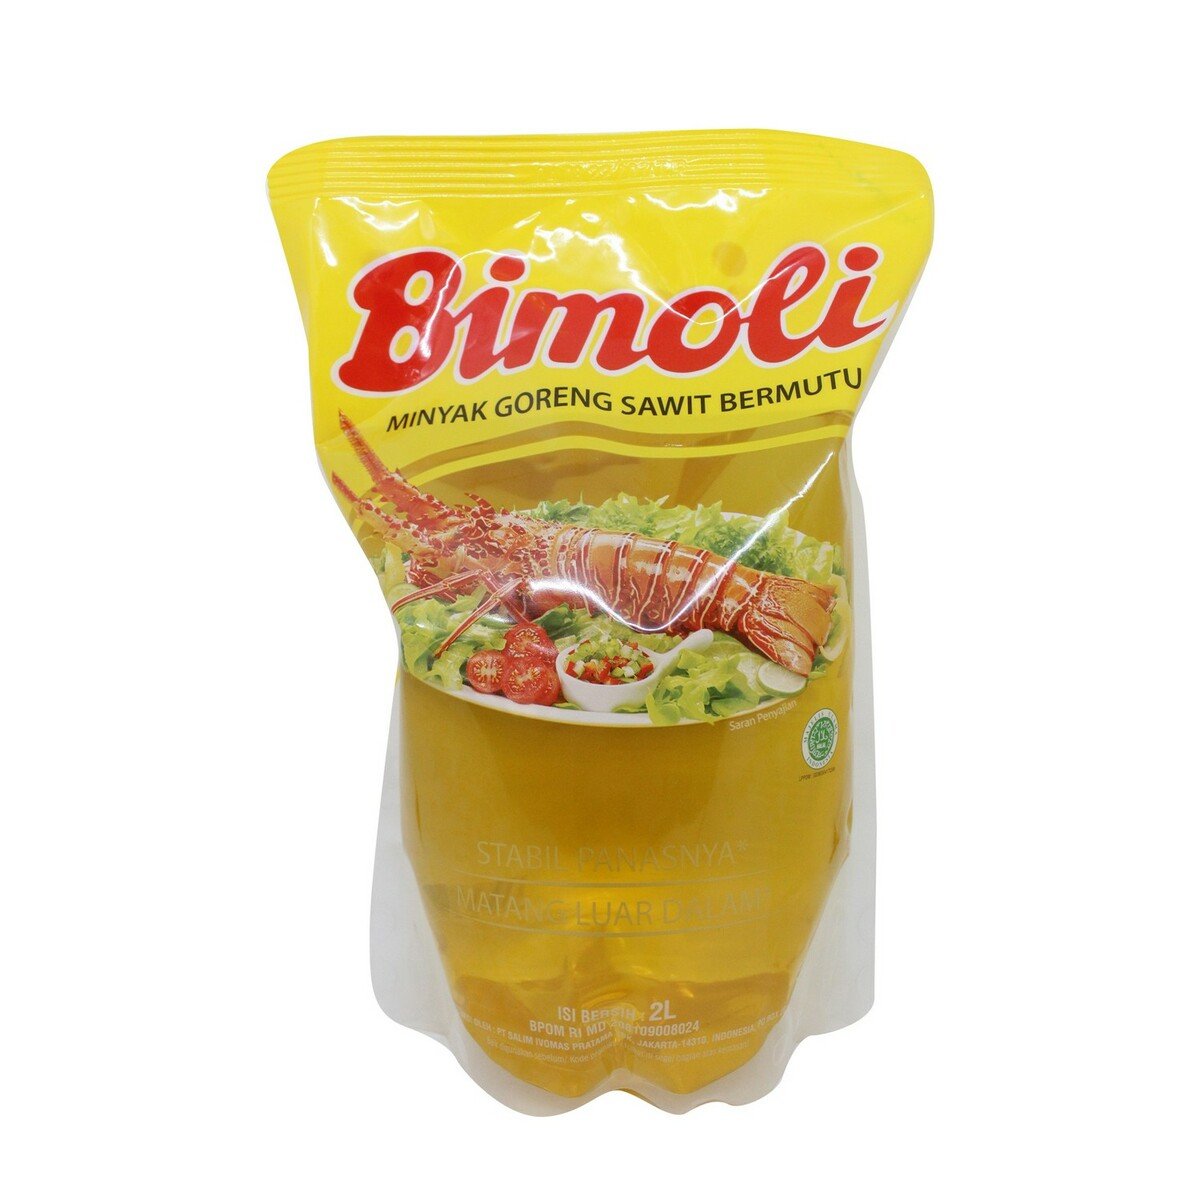 Bimoli Minyak Goreng Pouch 2Litre